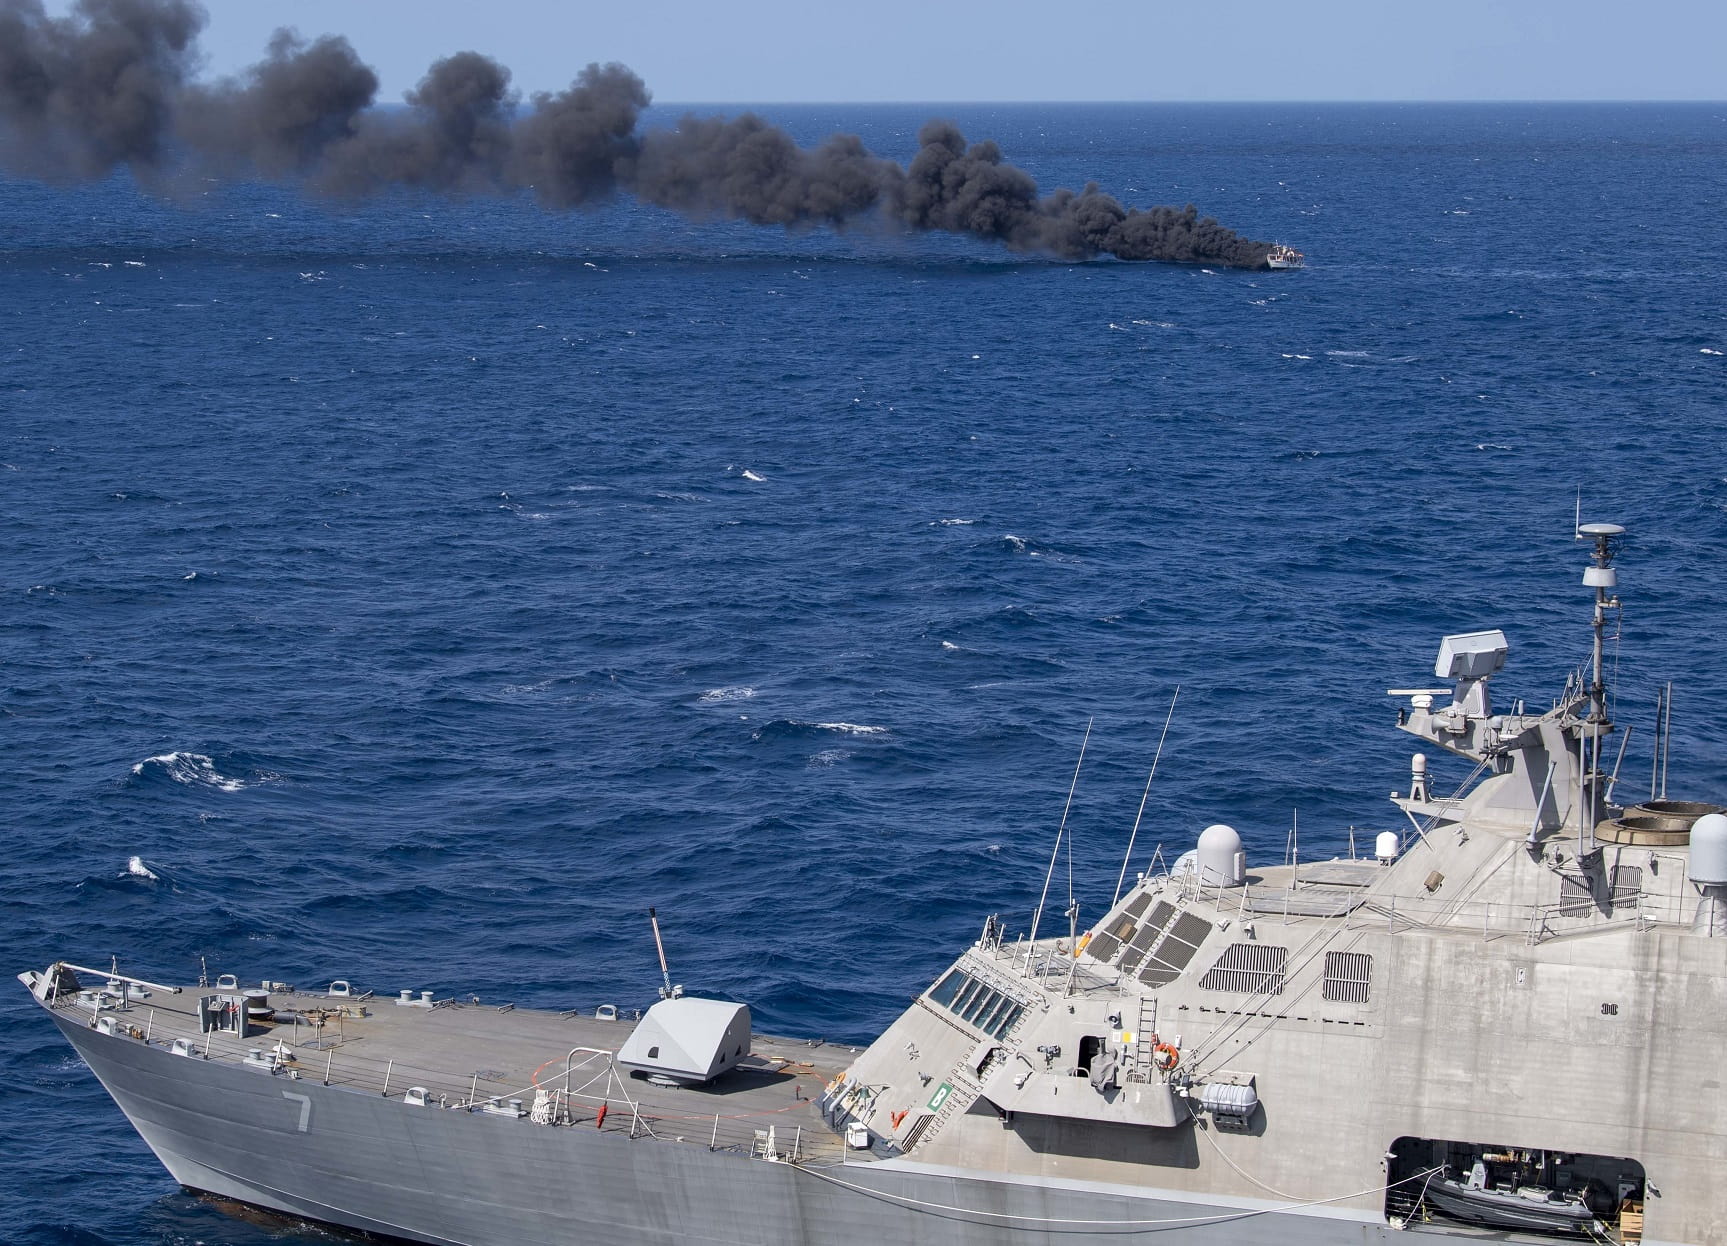 Novedoso buque de guerra del Comando Sur hundió un barco desconocido en el Caribe